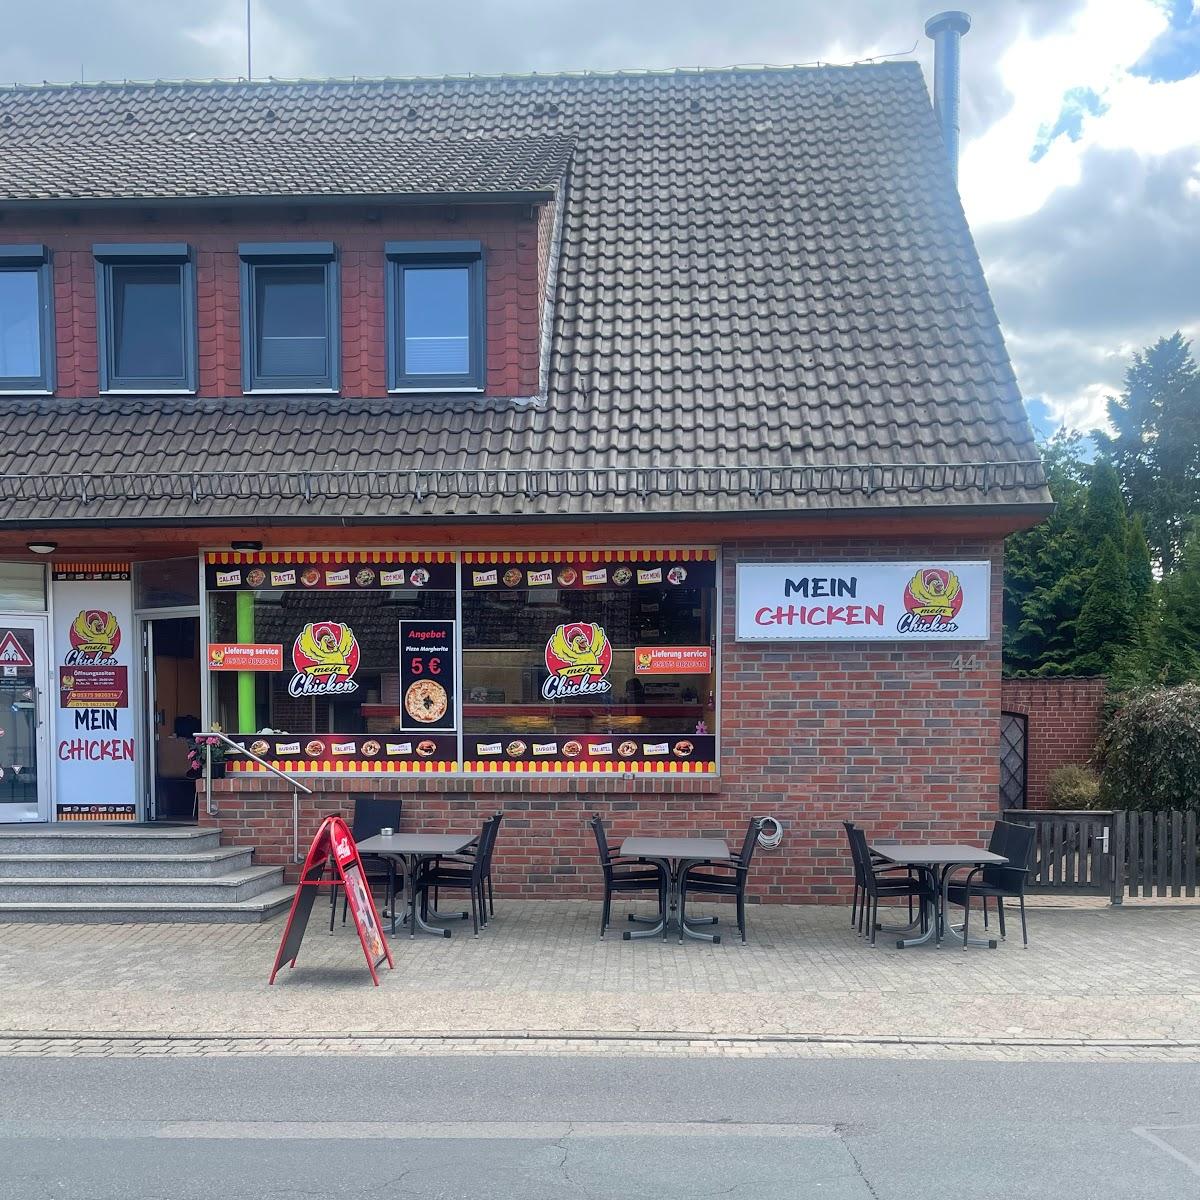 Restaurant "Mein Chicken" in Müden (Aller)